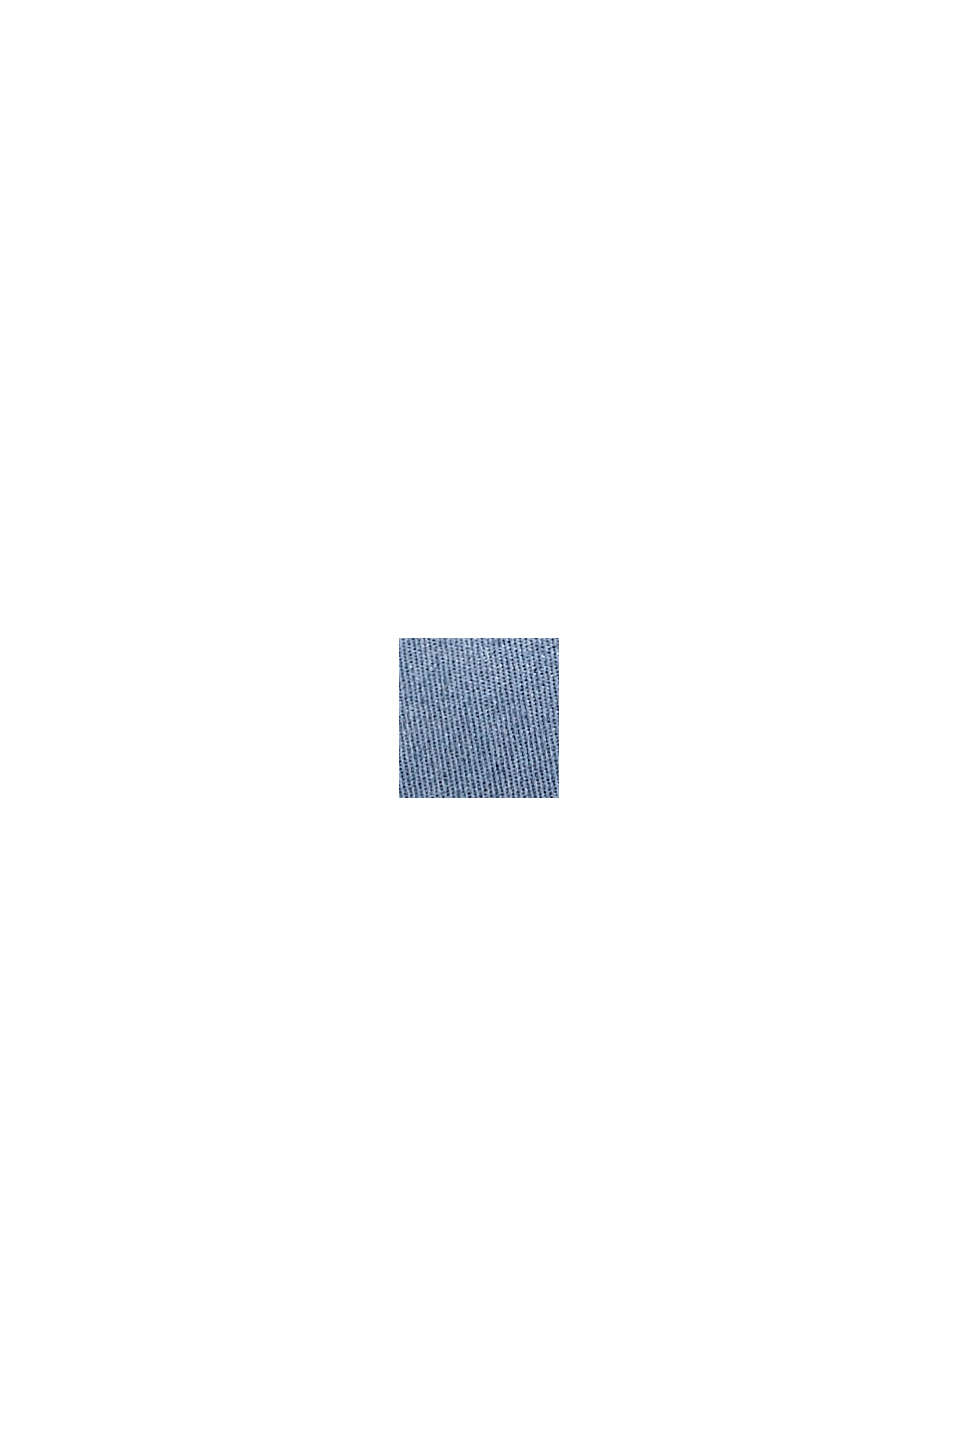 Kšiltovka, 100% bavlna, GREY BLUE, swatch